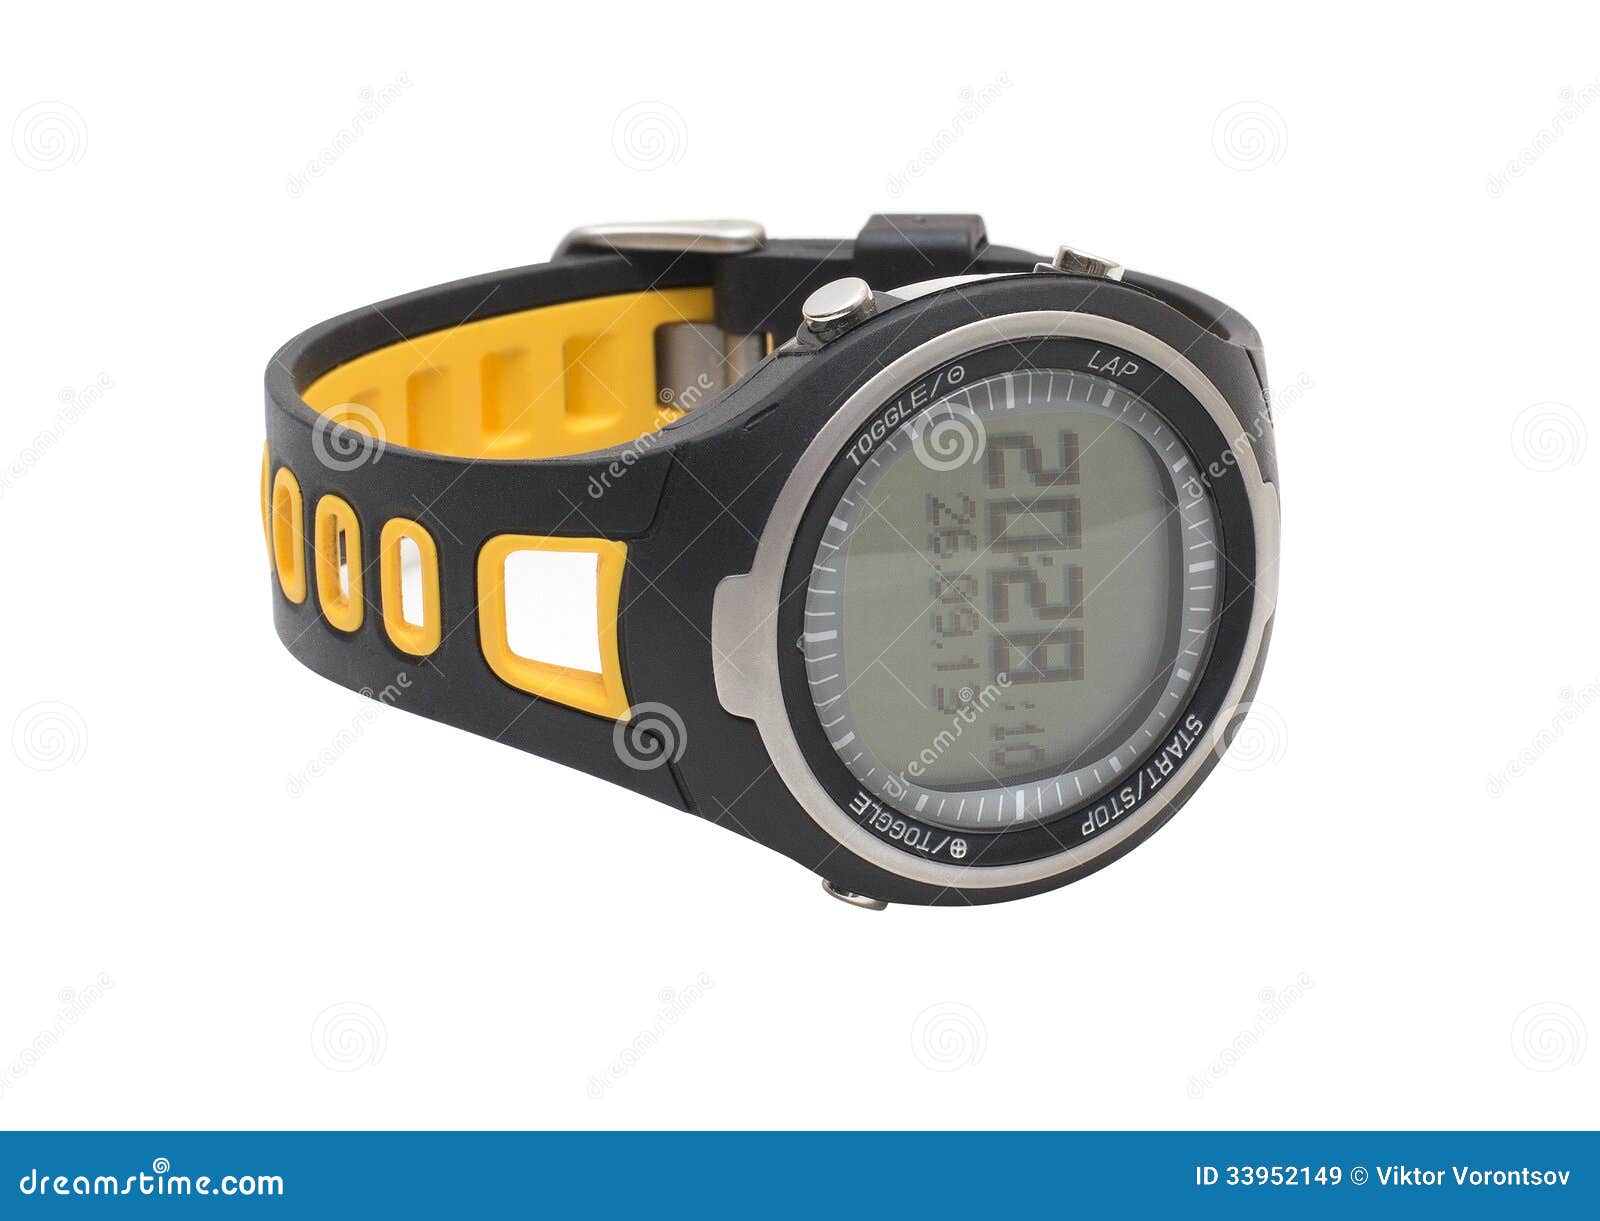 pulsometer sport hand watch  on white